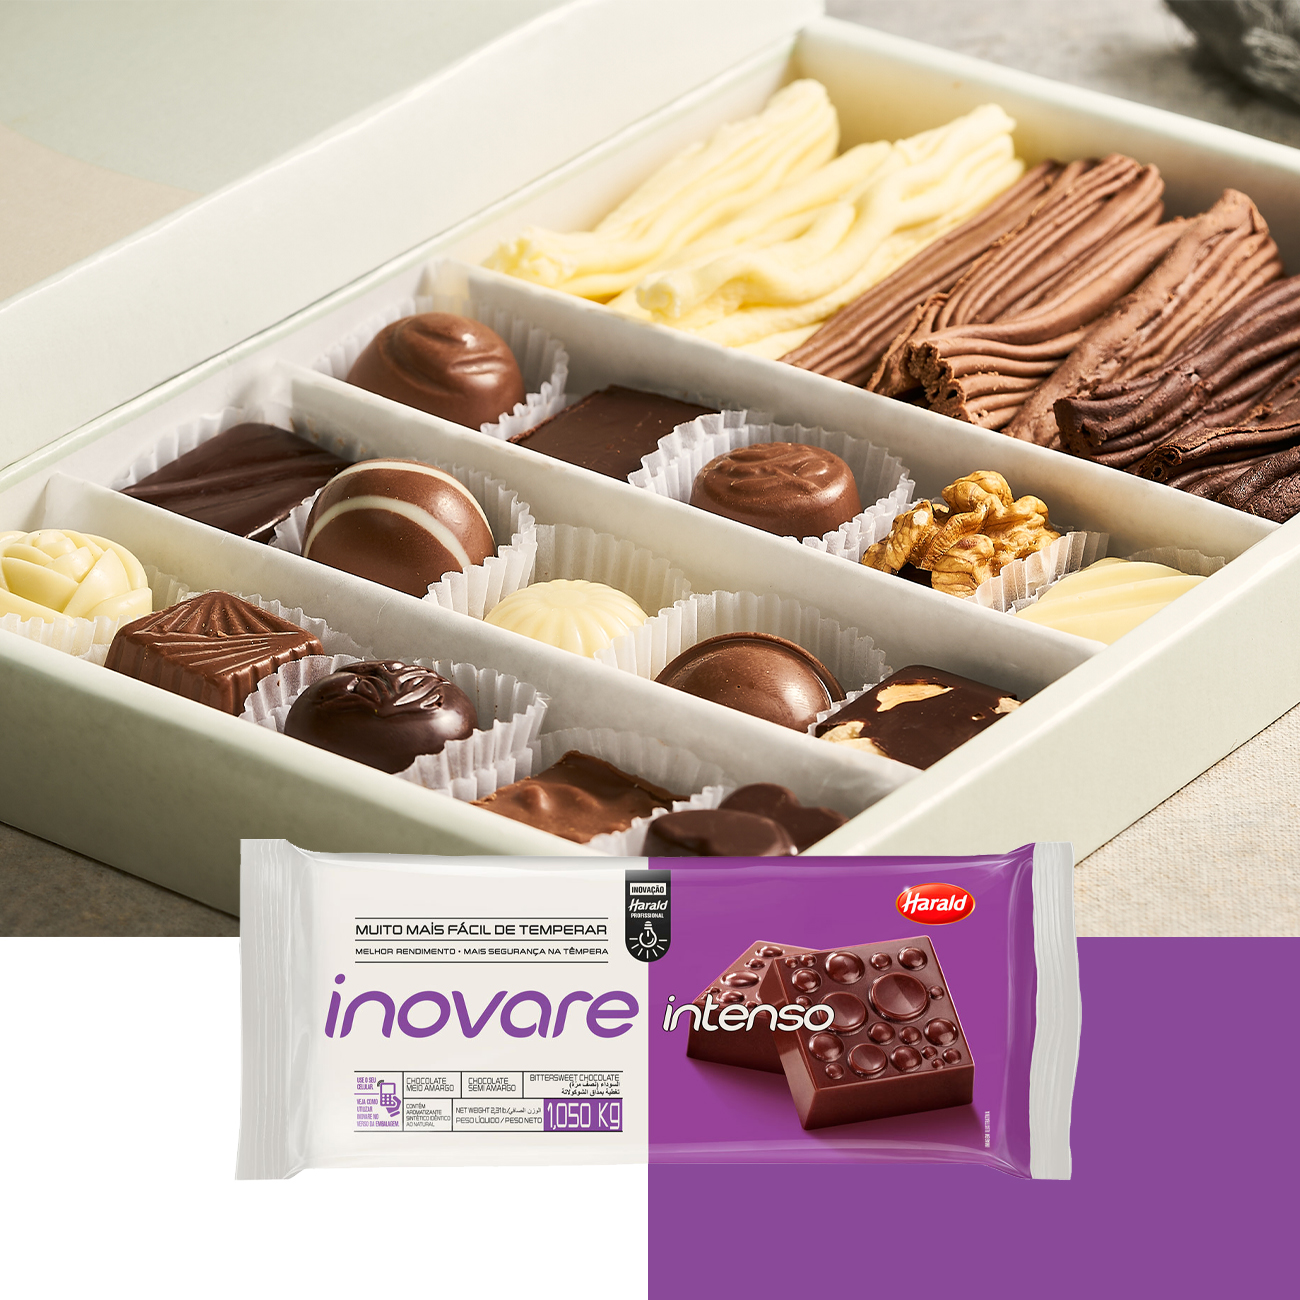 Cobertura de Chocolate em Barra Harald Inovare Intenso Meio Amargo 1,05kg